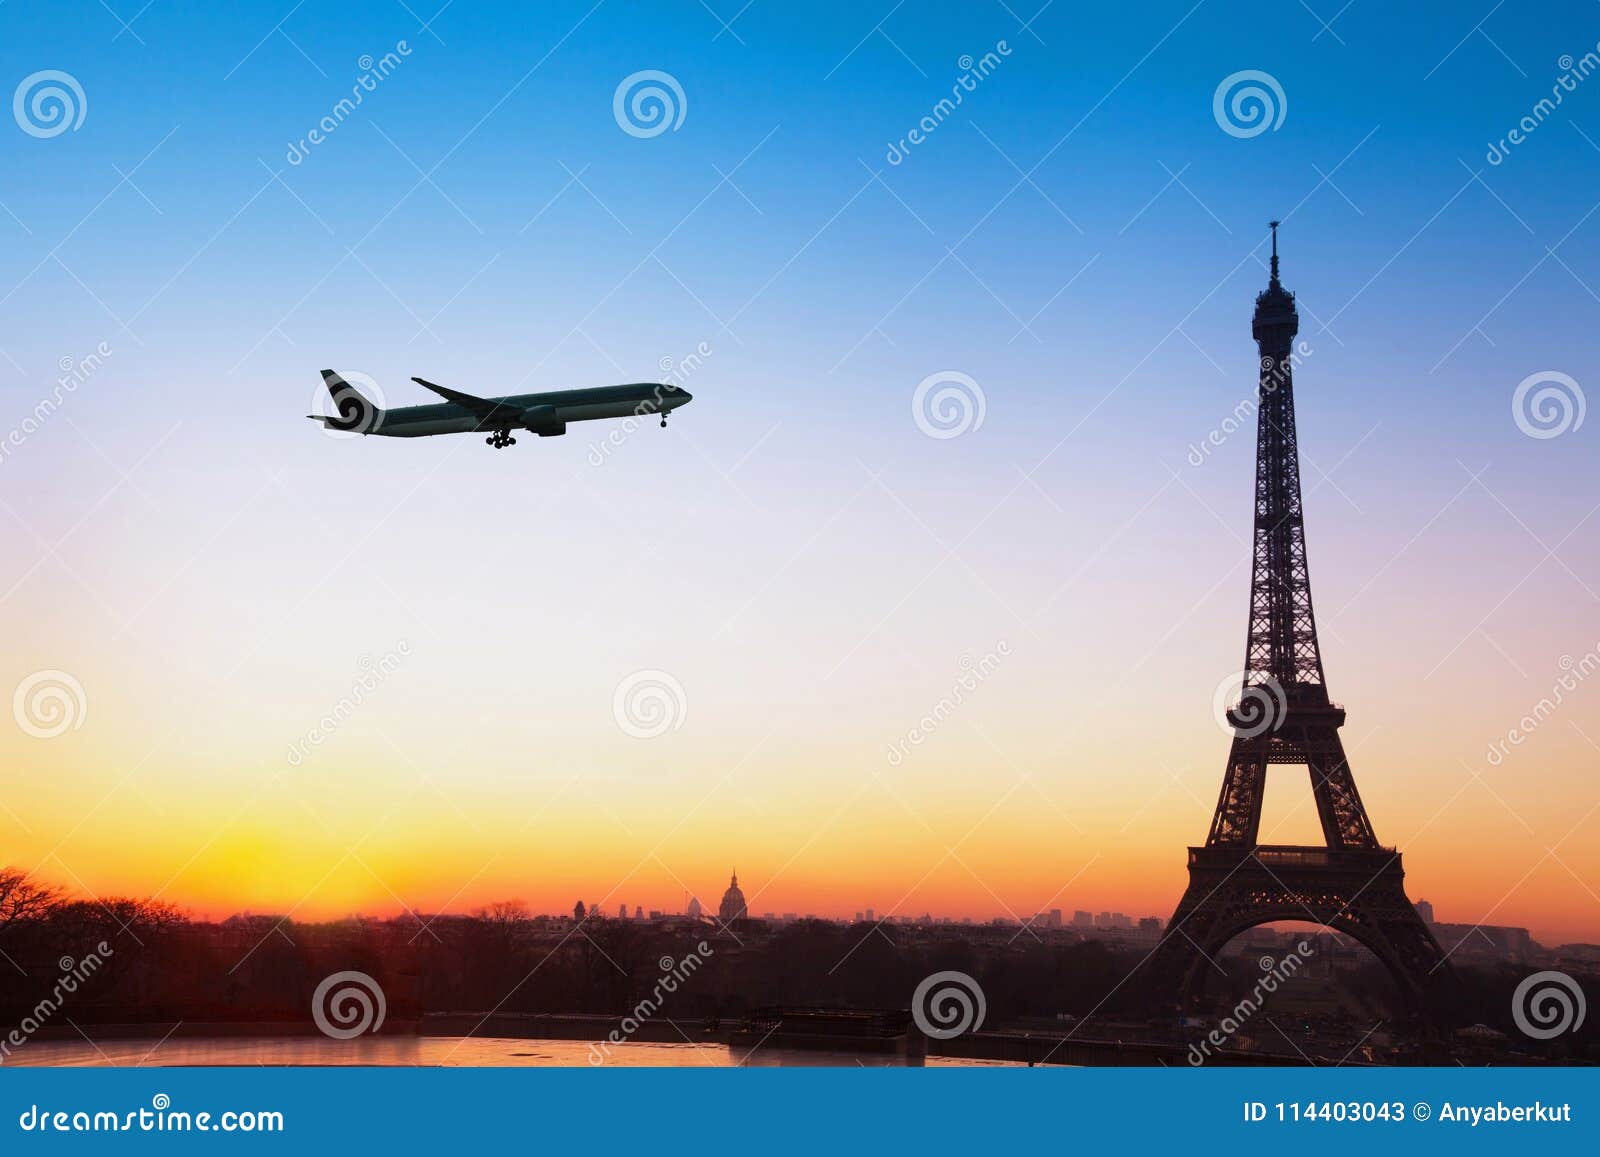 图片 法国航空接收其首架空客A350-900飞机_民航资源网